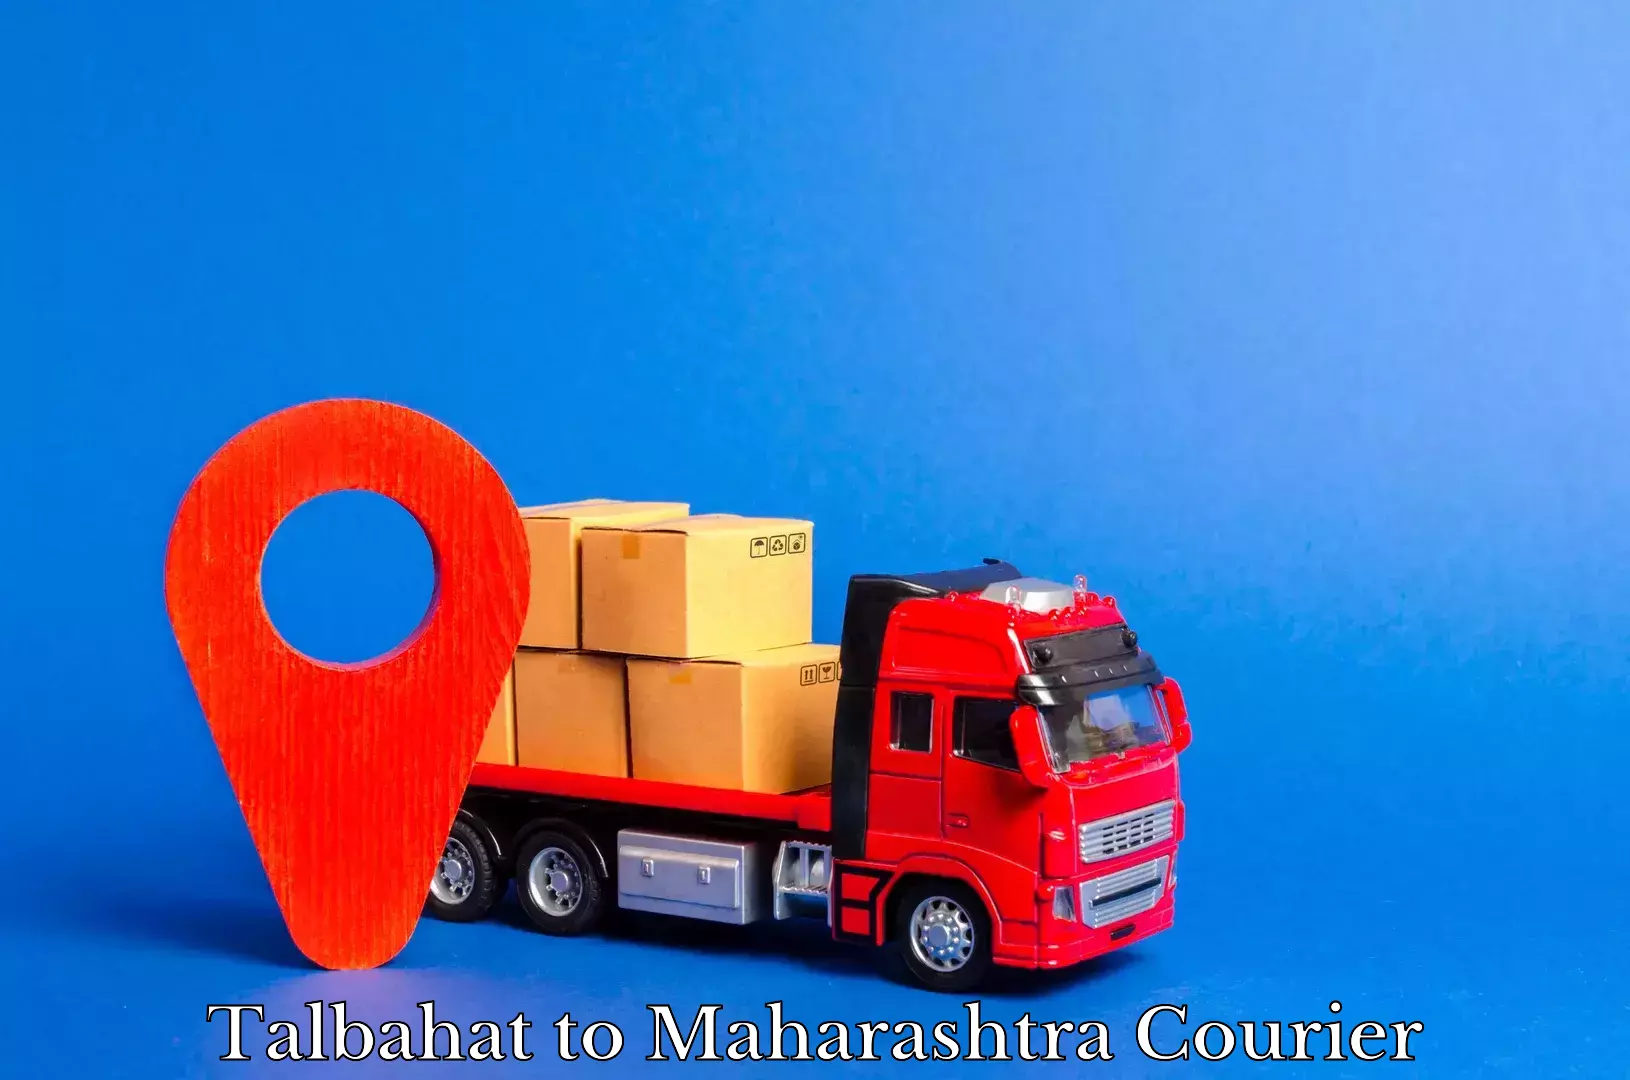 High-speed parcel service Talbahat to Maharashtra